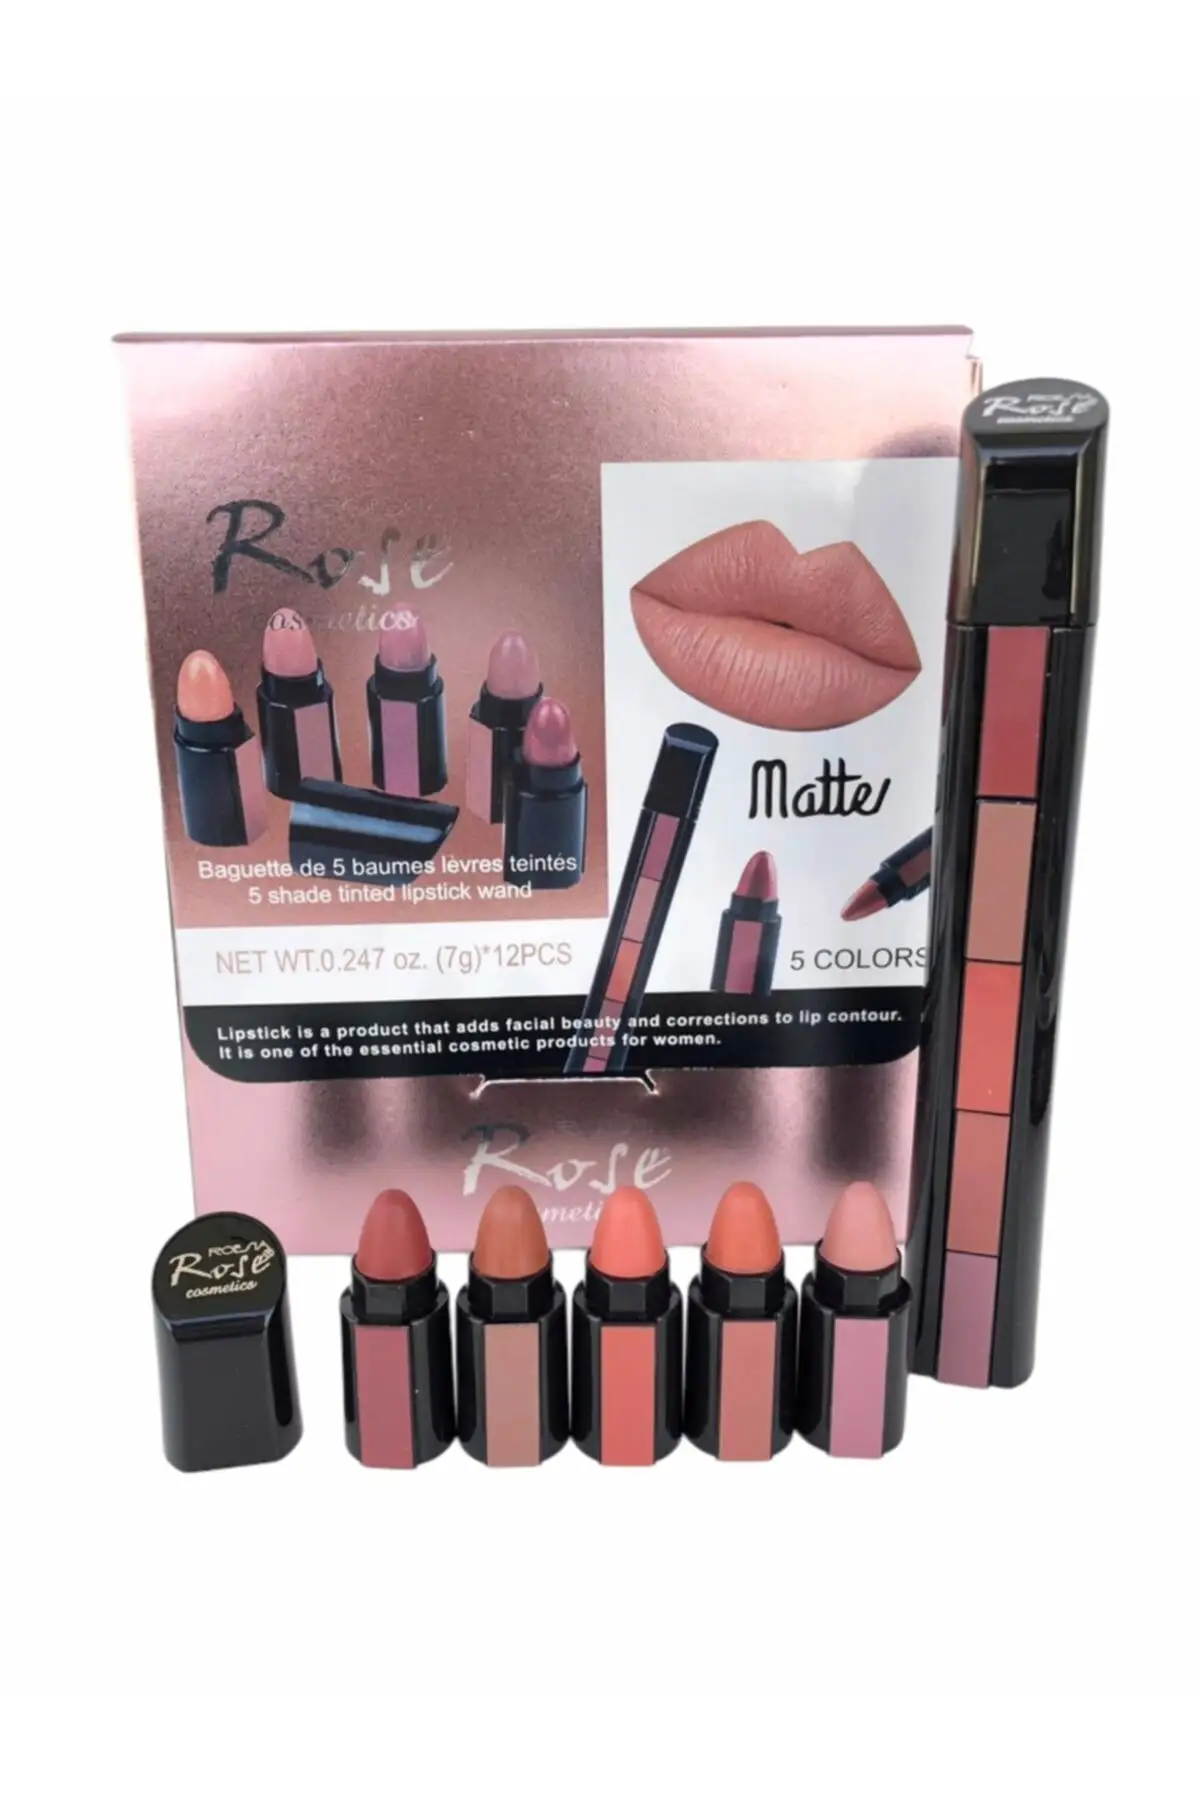 

Rose 5'li Pen Model Lipstick Set Plump Lips Dazzling Five Different Color Option Trend Fashion High Quality Unique Women Makeup